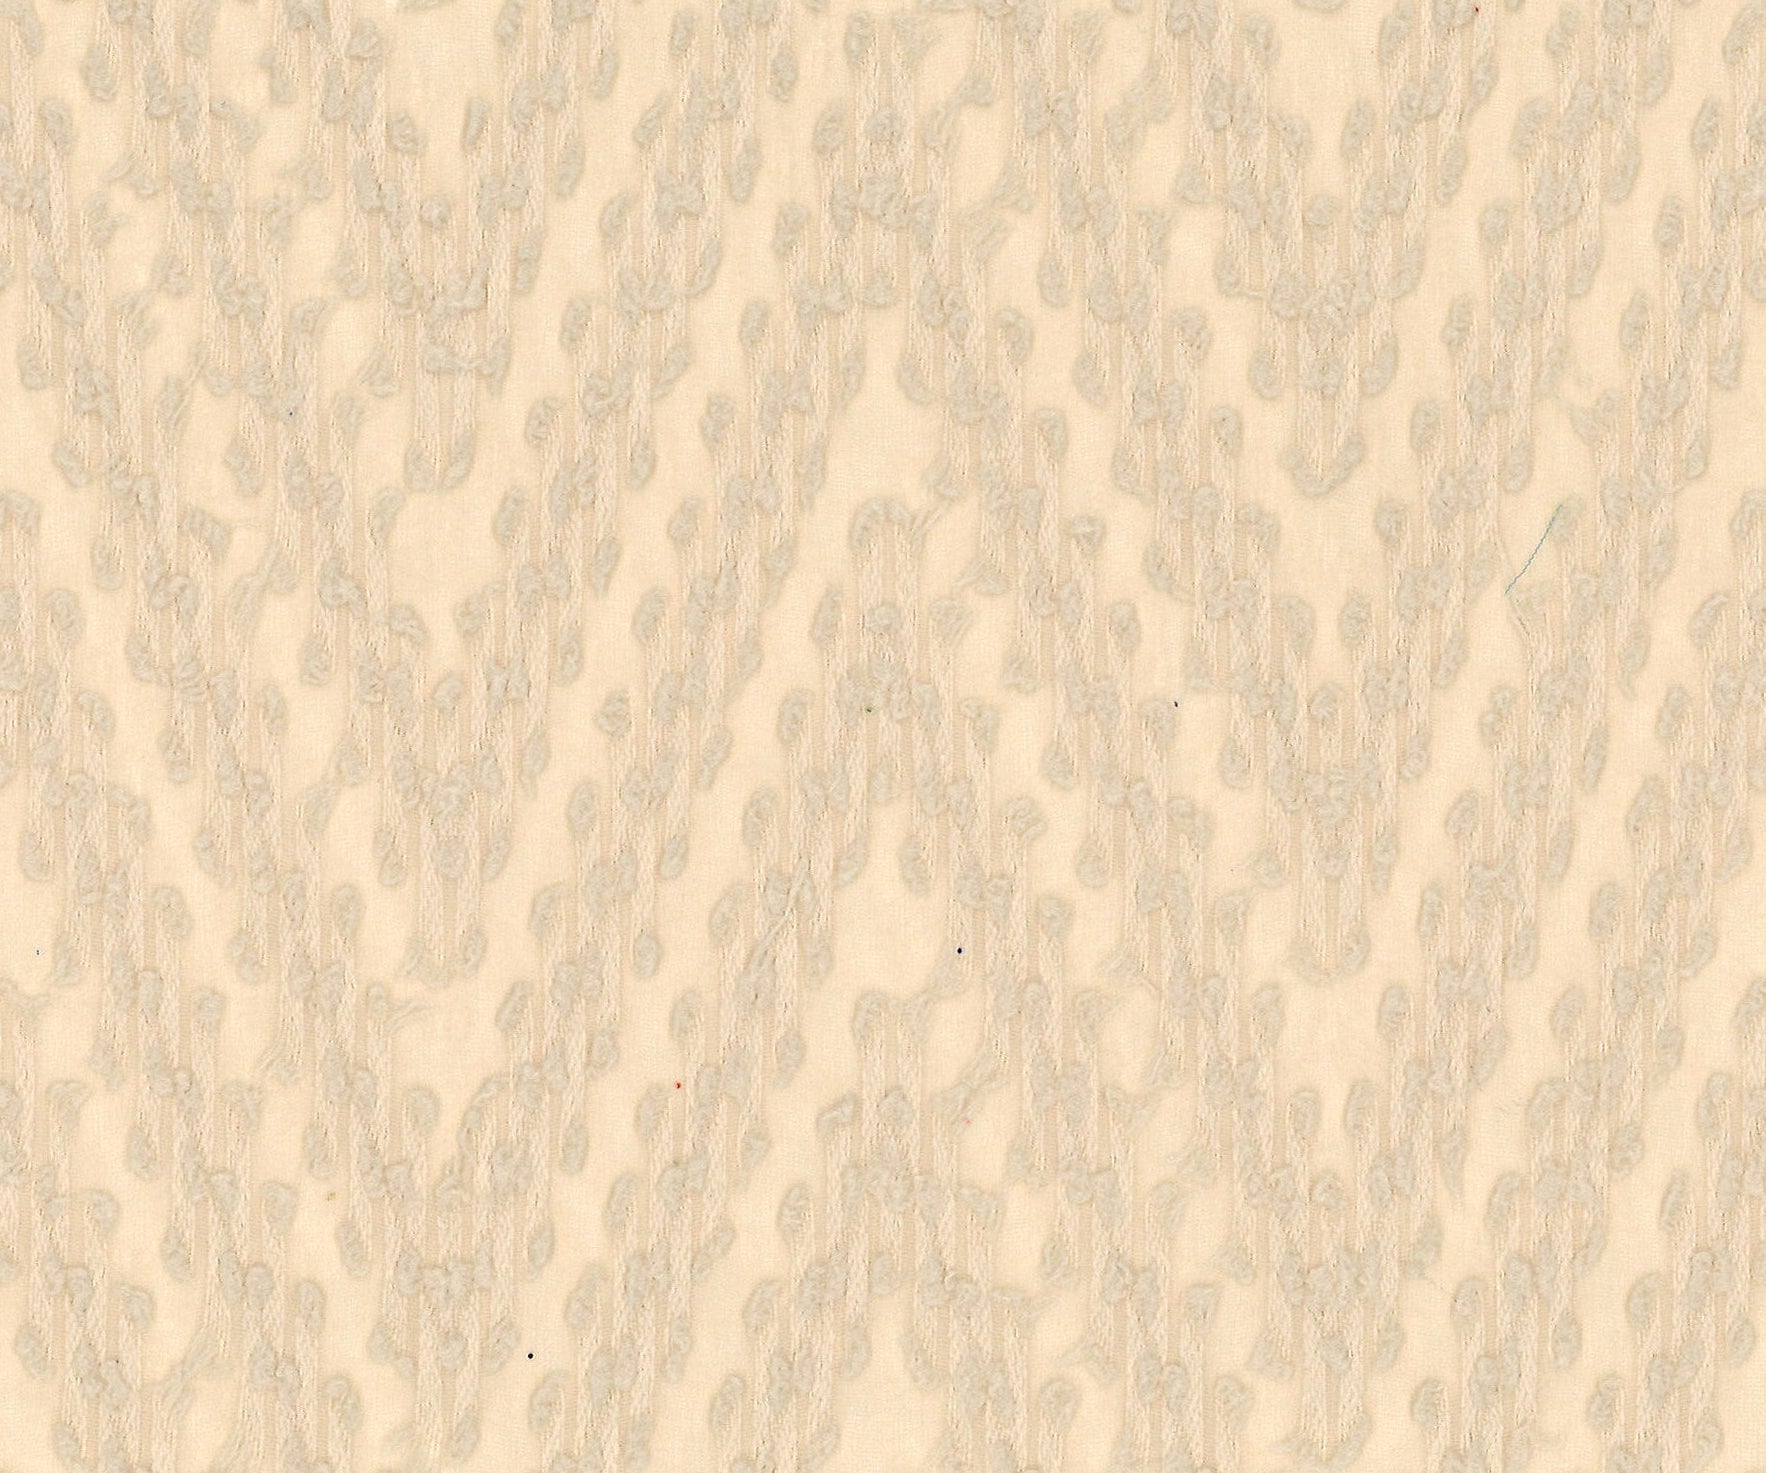 9958-02 Wheat Polyester Chiffon Winding Pattern Jacquard Plain Dyed 100% 110g/yd 58&quot; beige chiffon jacquard plain dyed polyester woven Chiffon, Jacquard - knit fabric - woven fabric - fabric company - fabric wholesale - fabric b2b - fabric factory - high quality fabric - hong kong fabric - fabric hk - acetate fabric - cotton fabric - linen fabric - metallic fabric - nylon fabric - polyester fabric - spandex fabric - chun wing hing - cwh hk - fabric worldwide ship - 針織布 - 梳織布 - 布料公司- 布料批發 - 香港布料 - 秦榮興